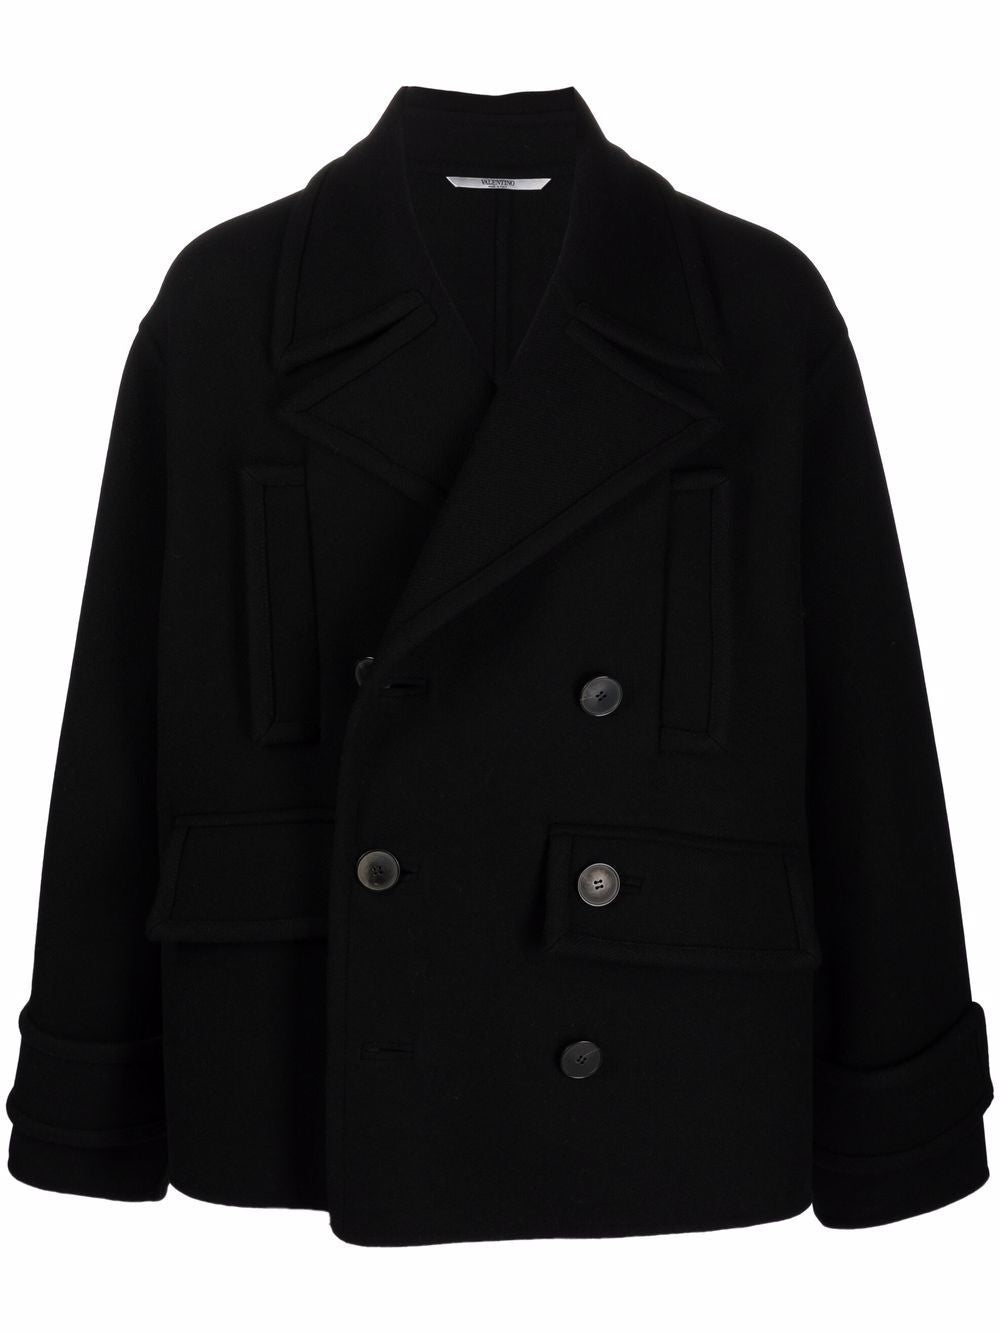 Áo khoác nam đen hai hàng nút FW24 từ Valentino